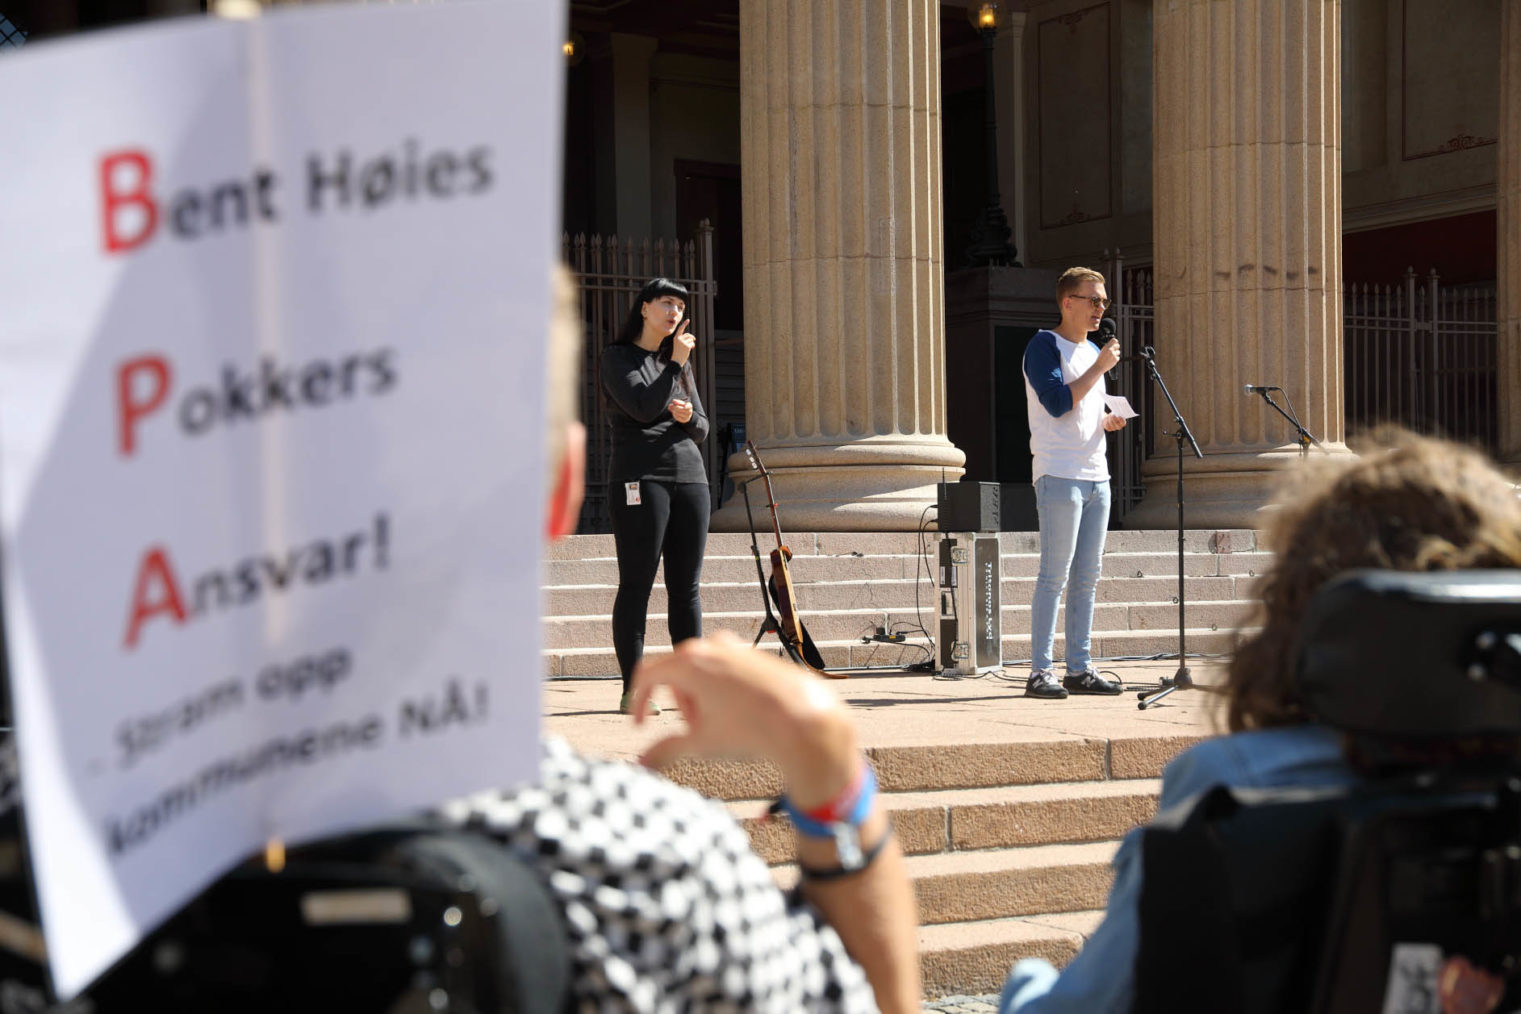 Bilde fra appell på Universitetsplassen i Oslo. I forgrunnen: rullestolbruker med plakaten "Bent Høies Pokkers Ansvar – Stram opp kommunenen NÅ!"